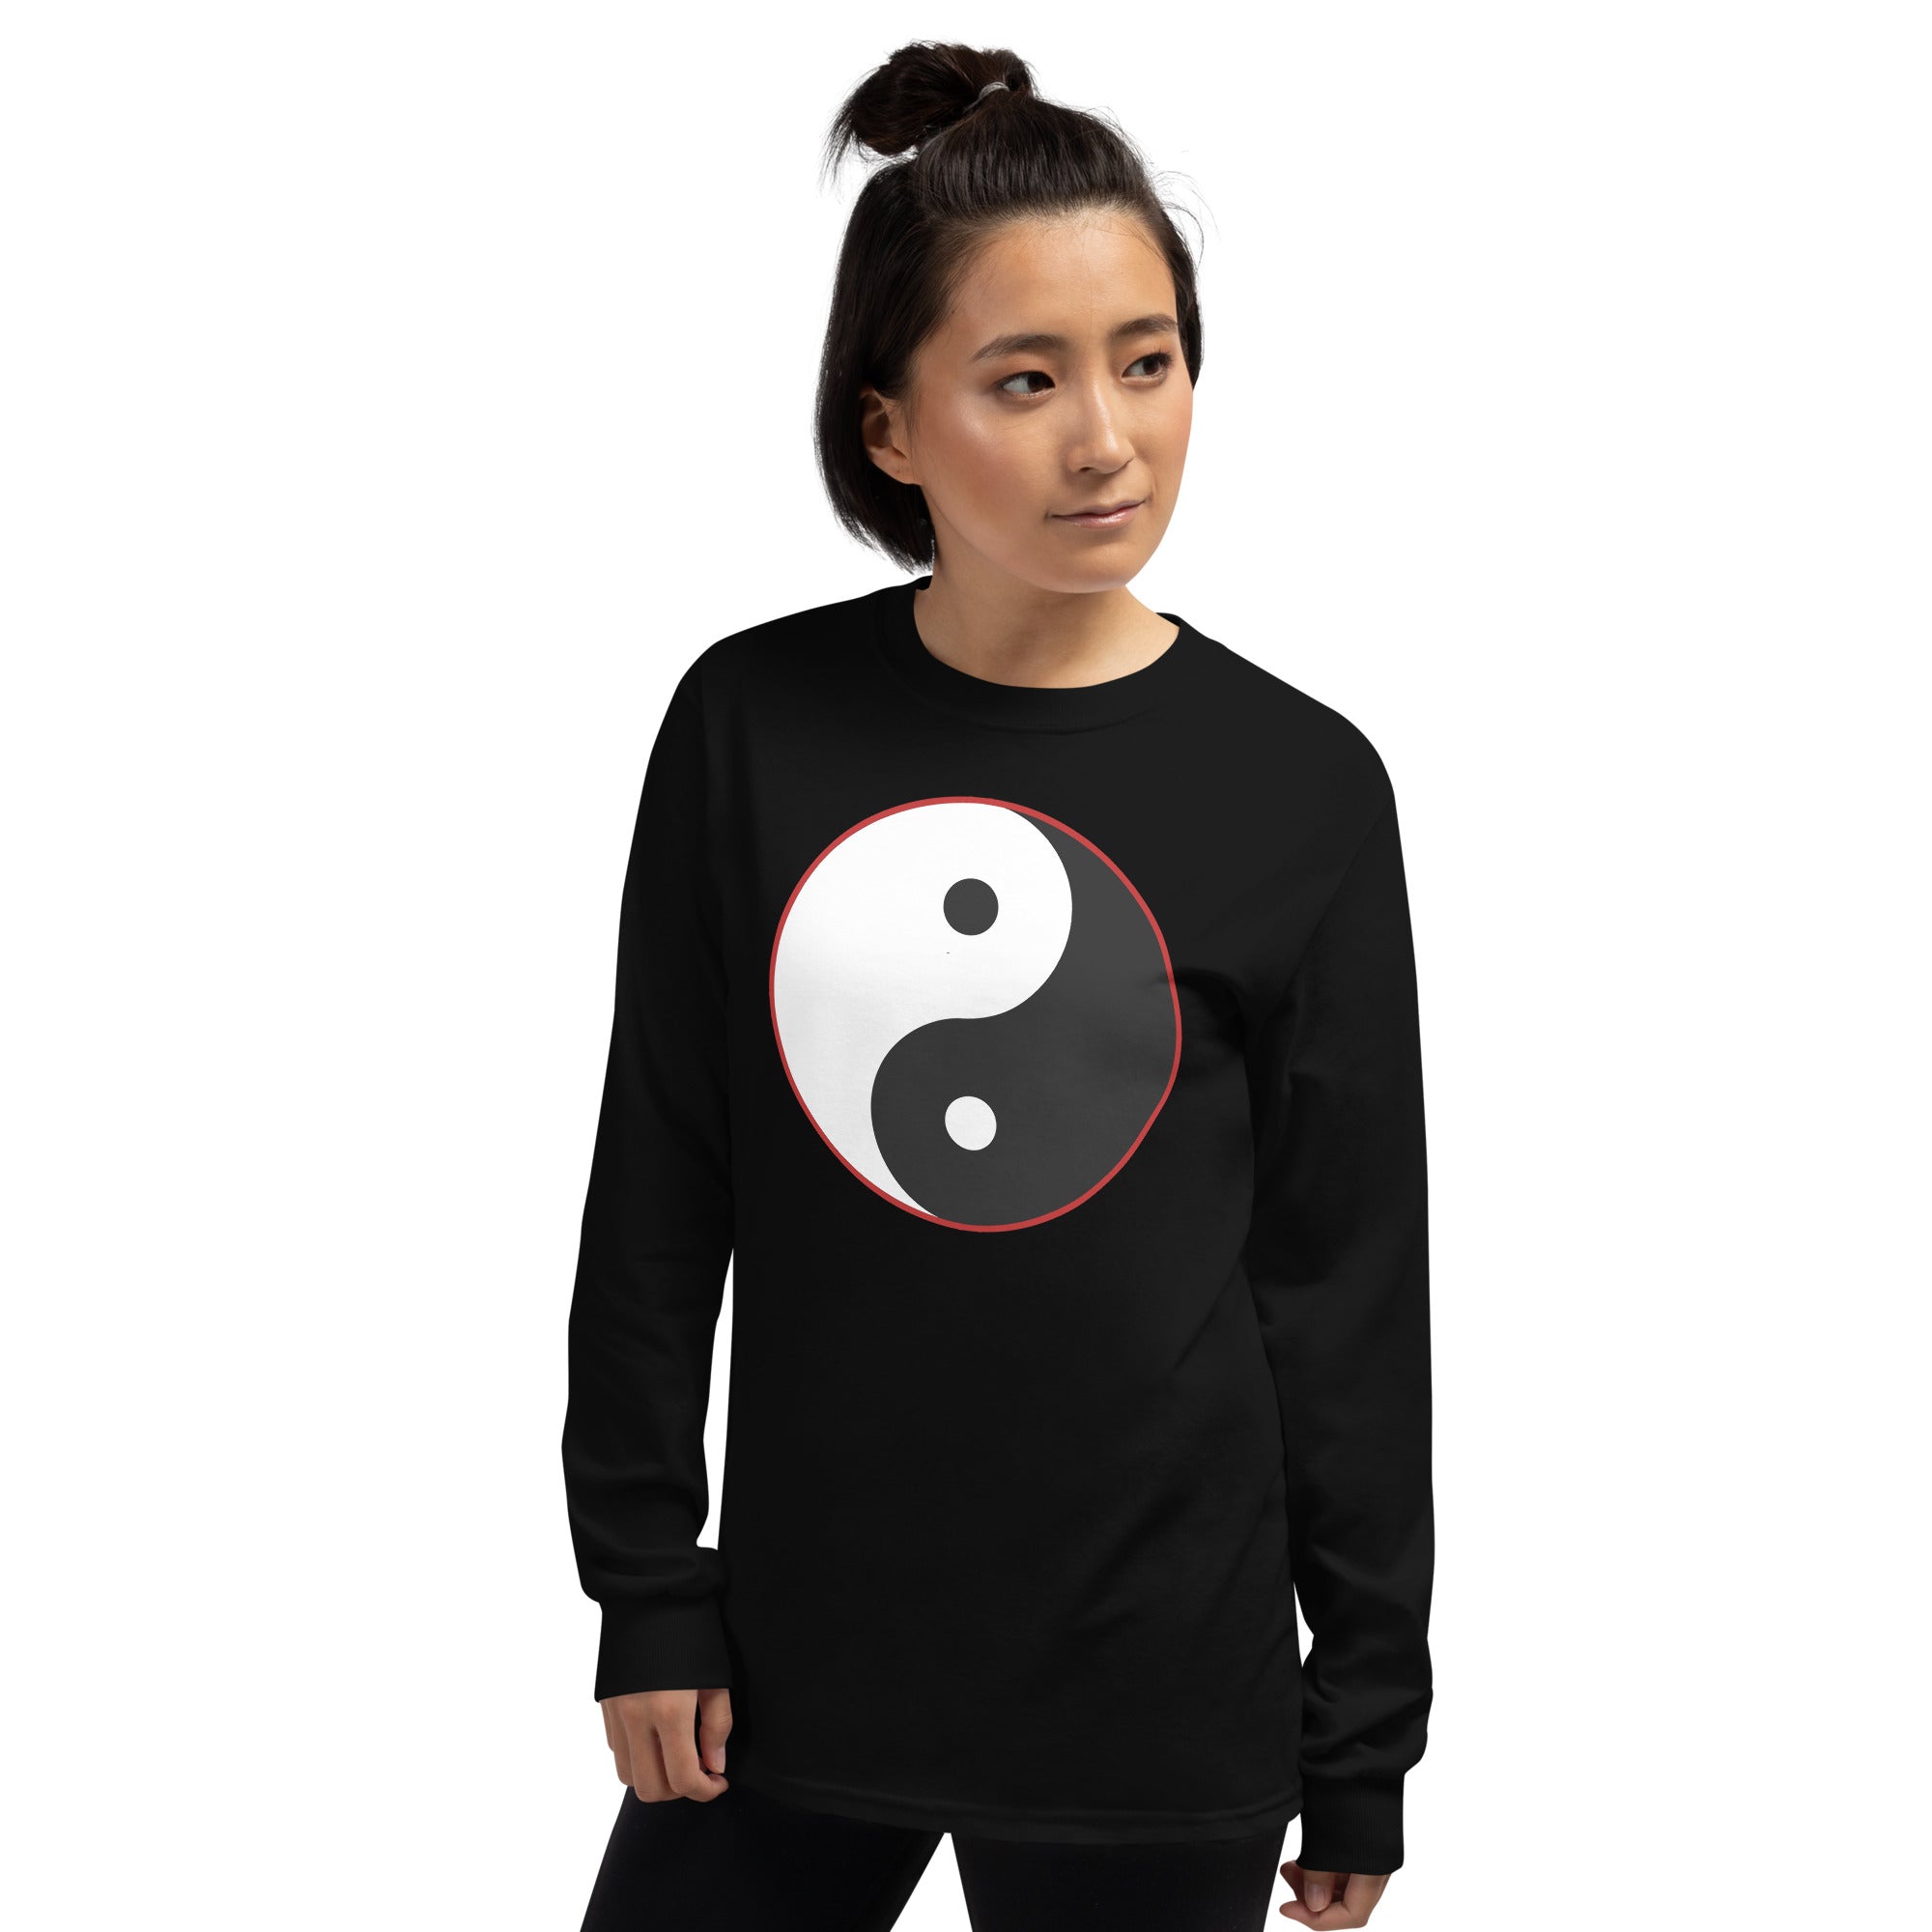 Yin and Yang Ancient Chinese Symbol Long Sleeve Shirt